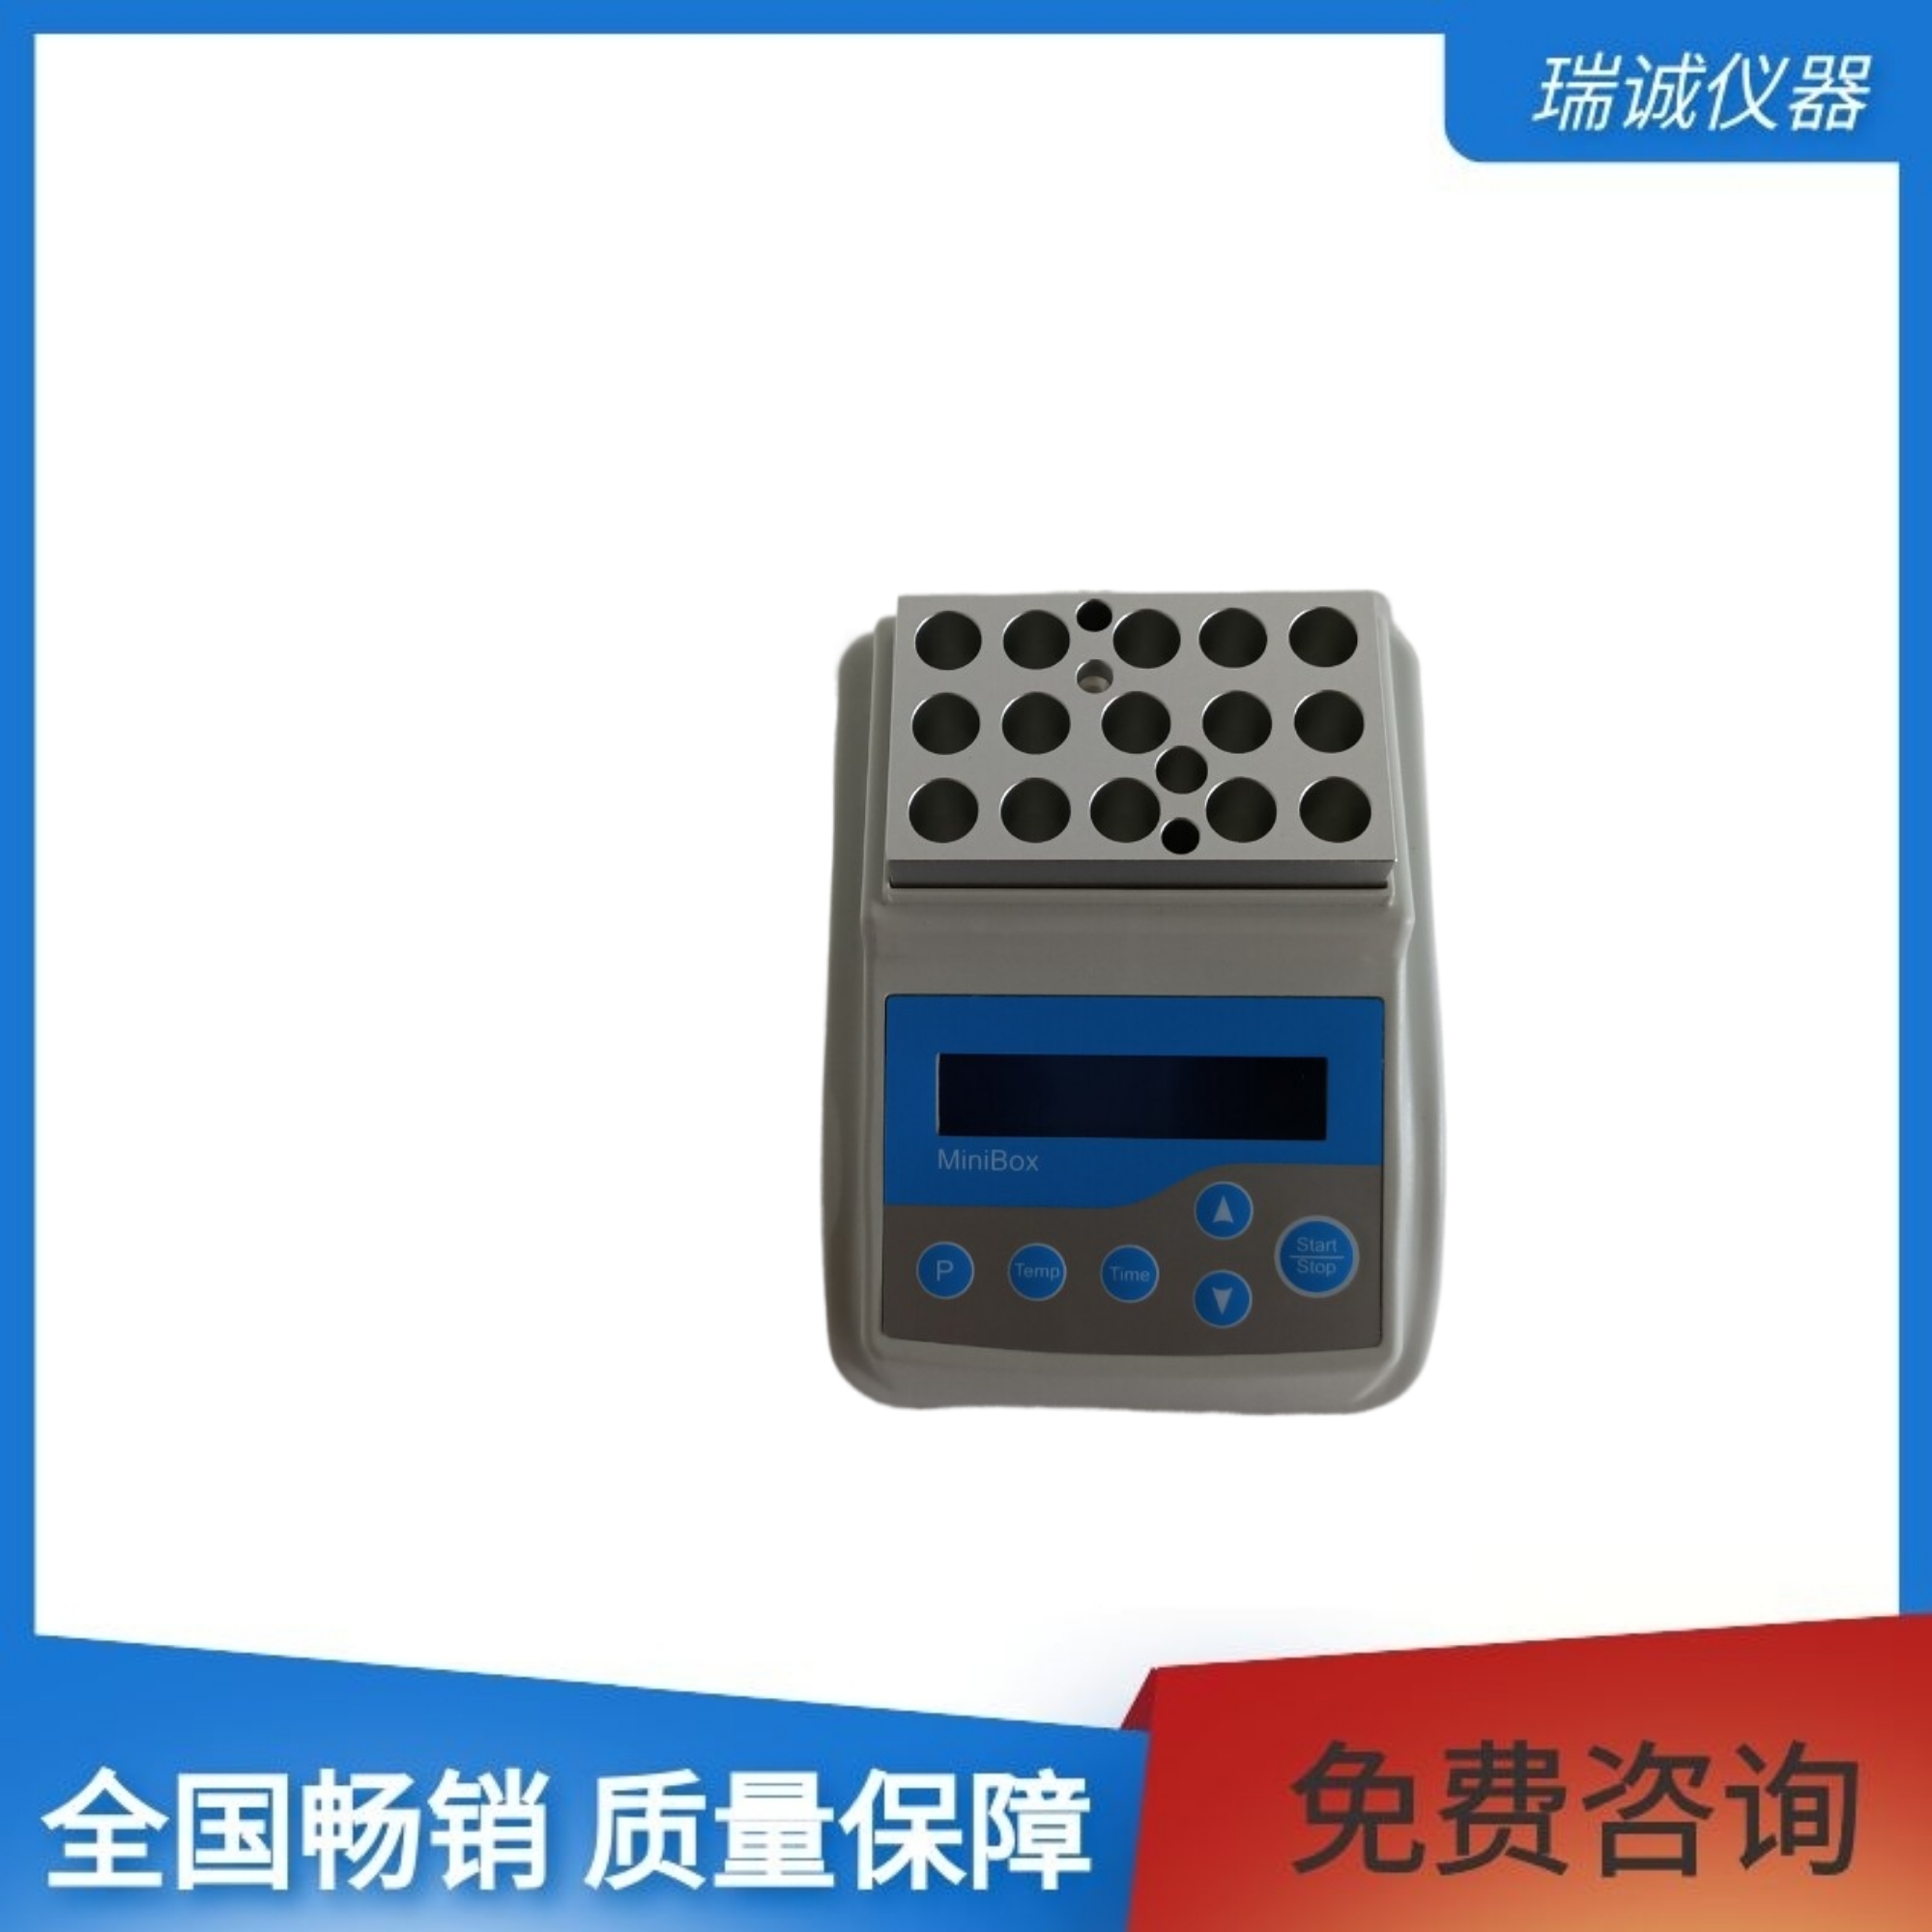 干式恒温器MiniBox-采用PID模糊控制技术的迷你型干式恒温器